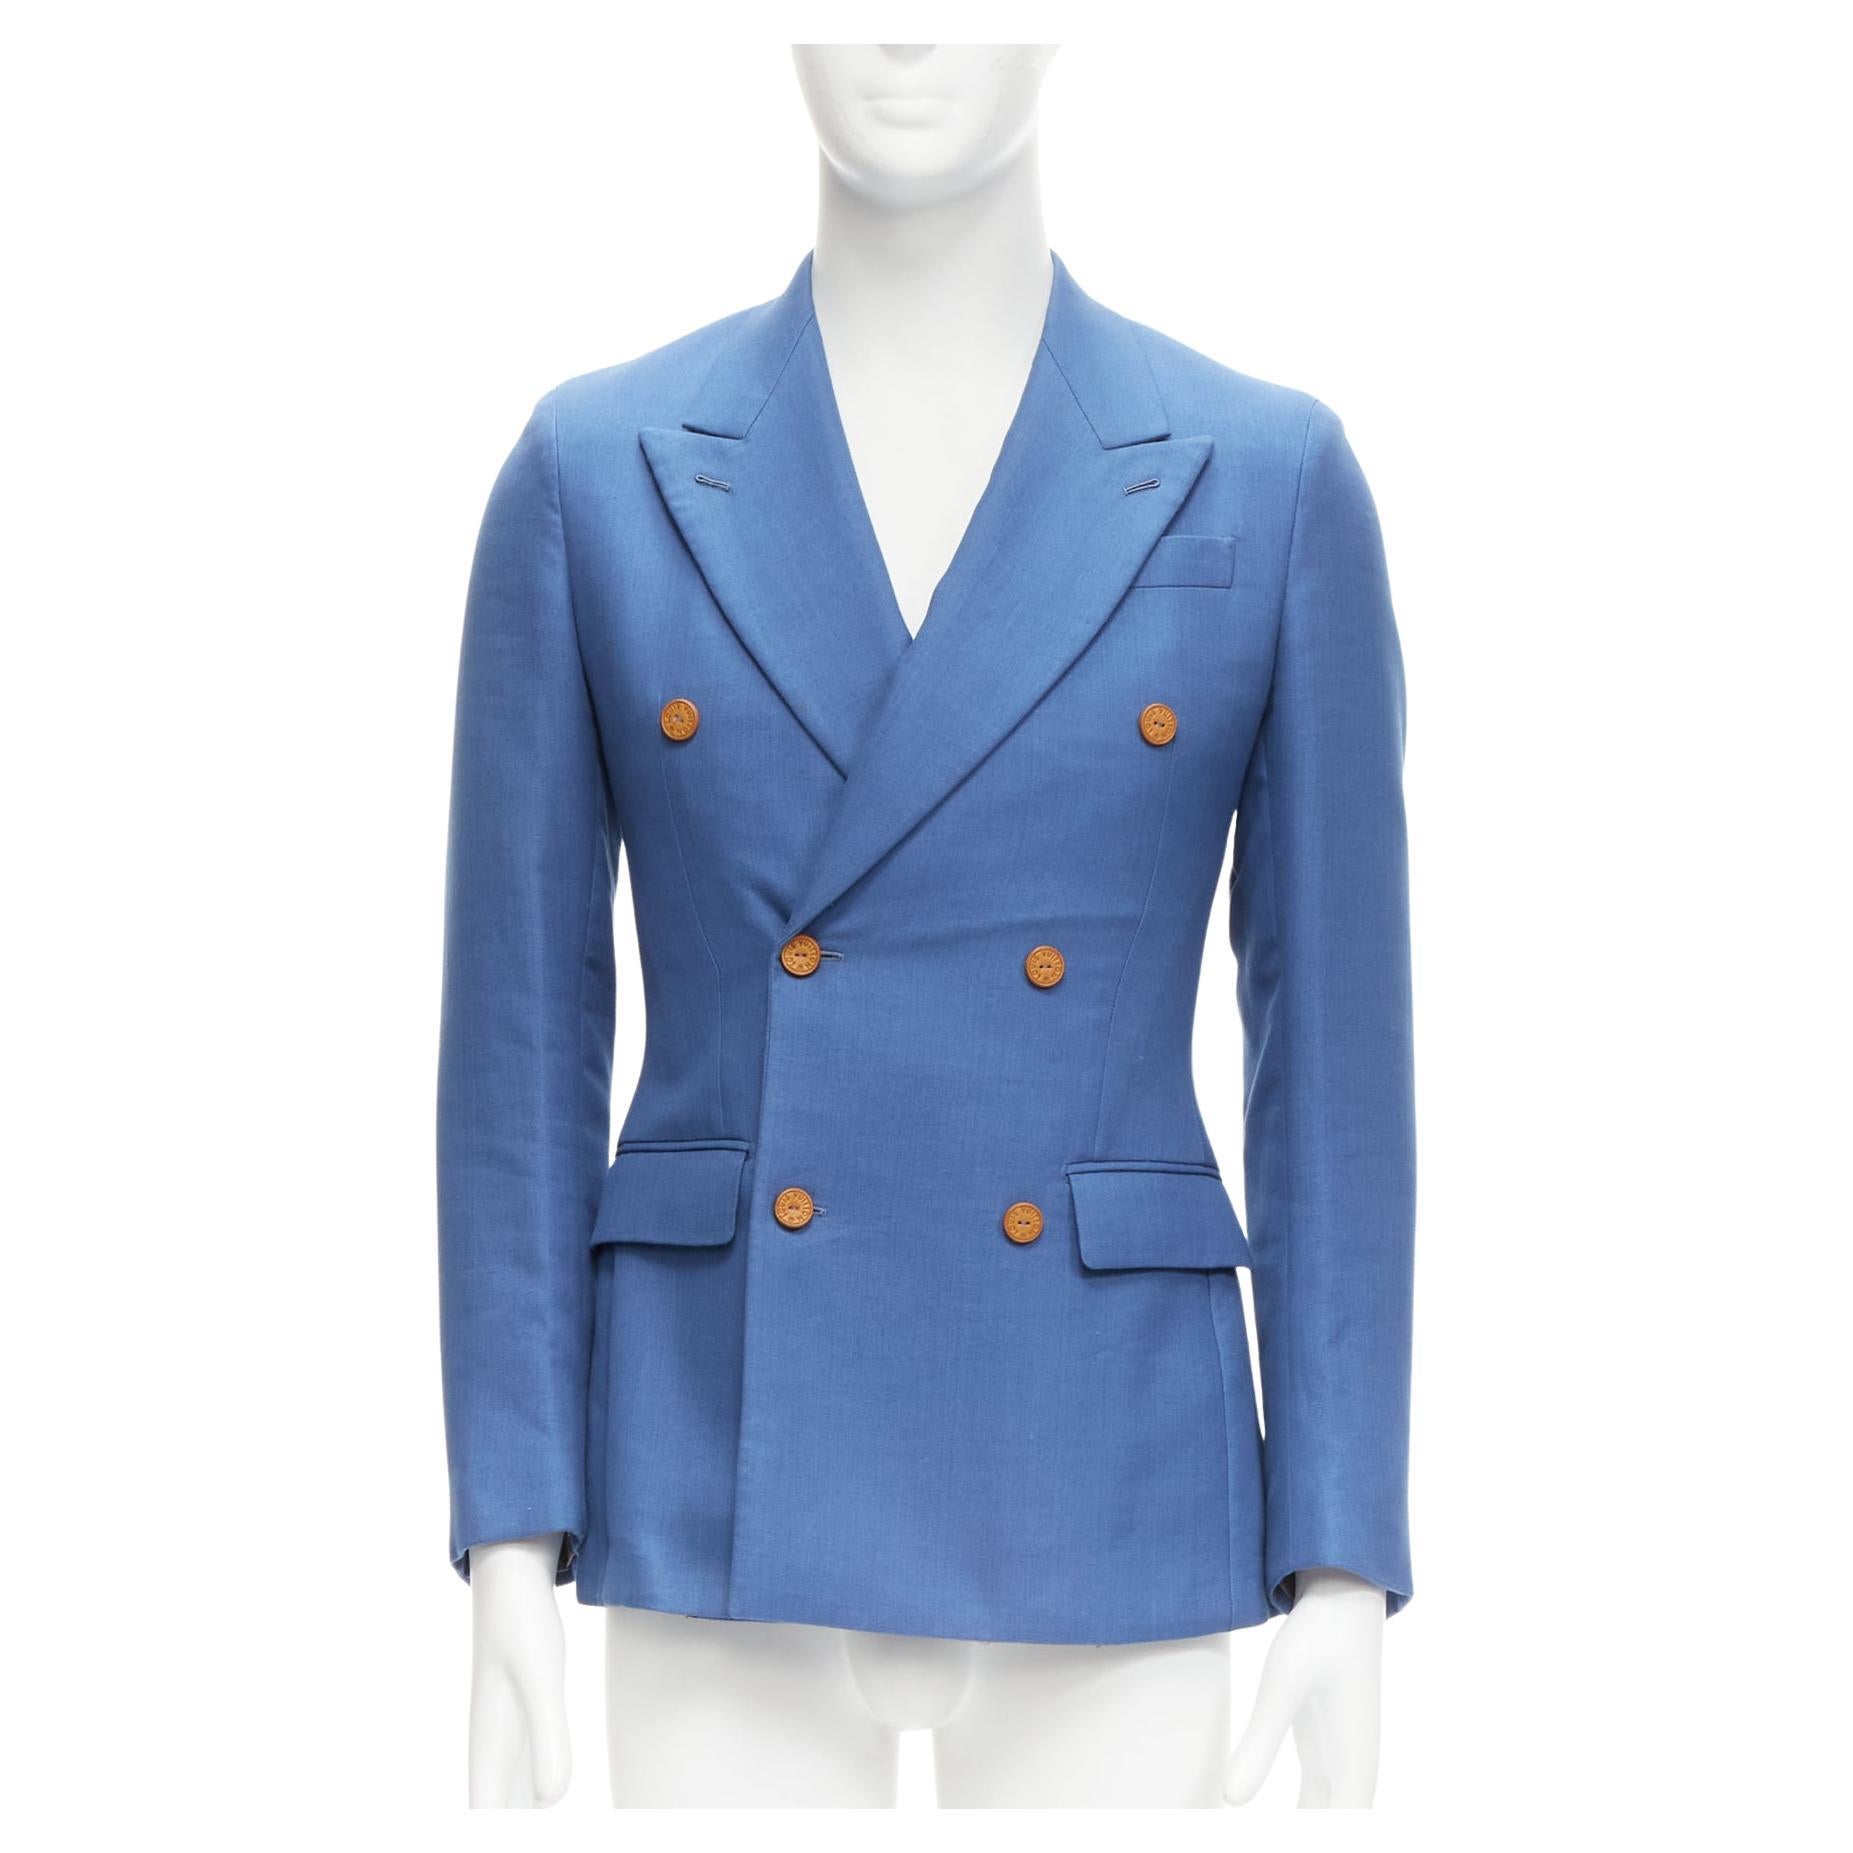 Louis Vuitton, Jackets & Coats, Louis Vuitton Blue Nuit Mens Xl Jacquard  Monogram